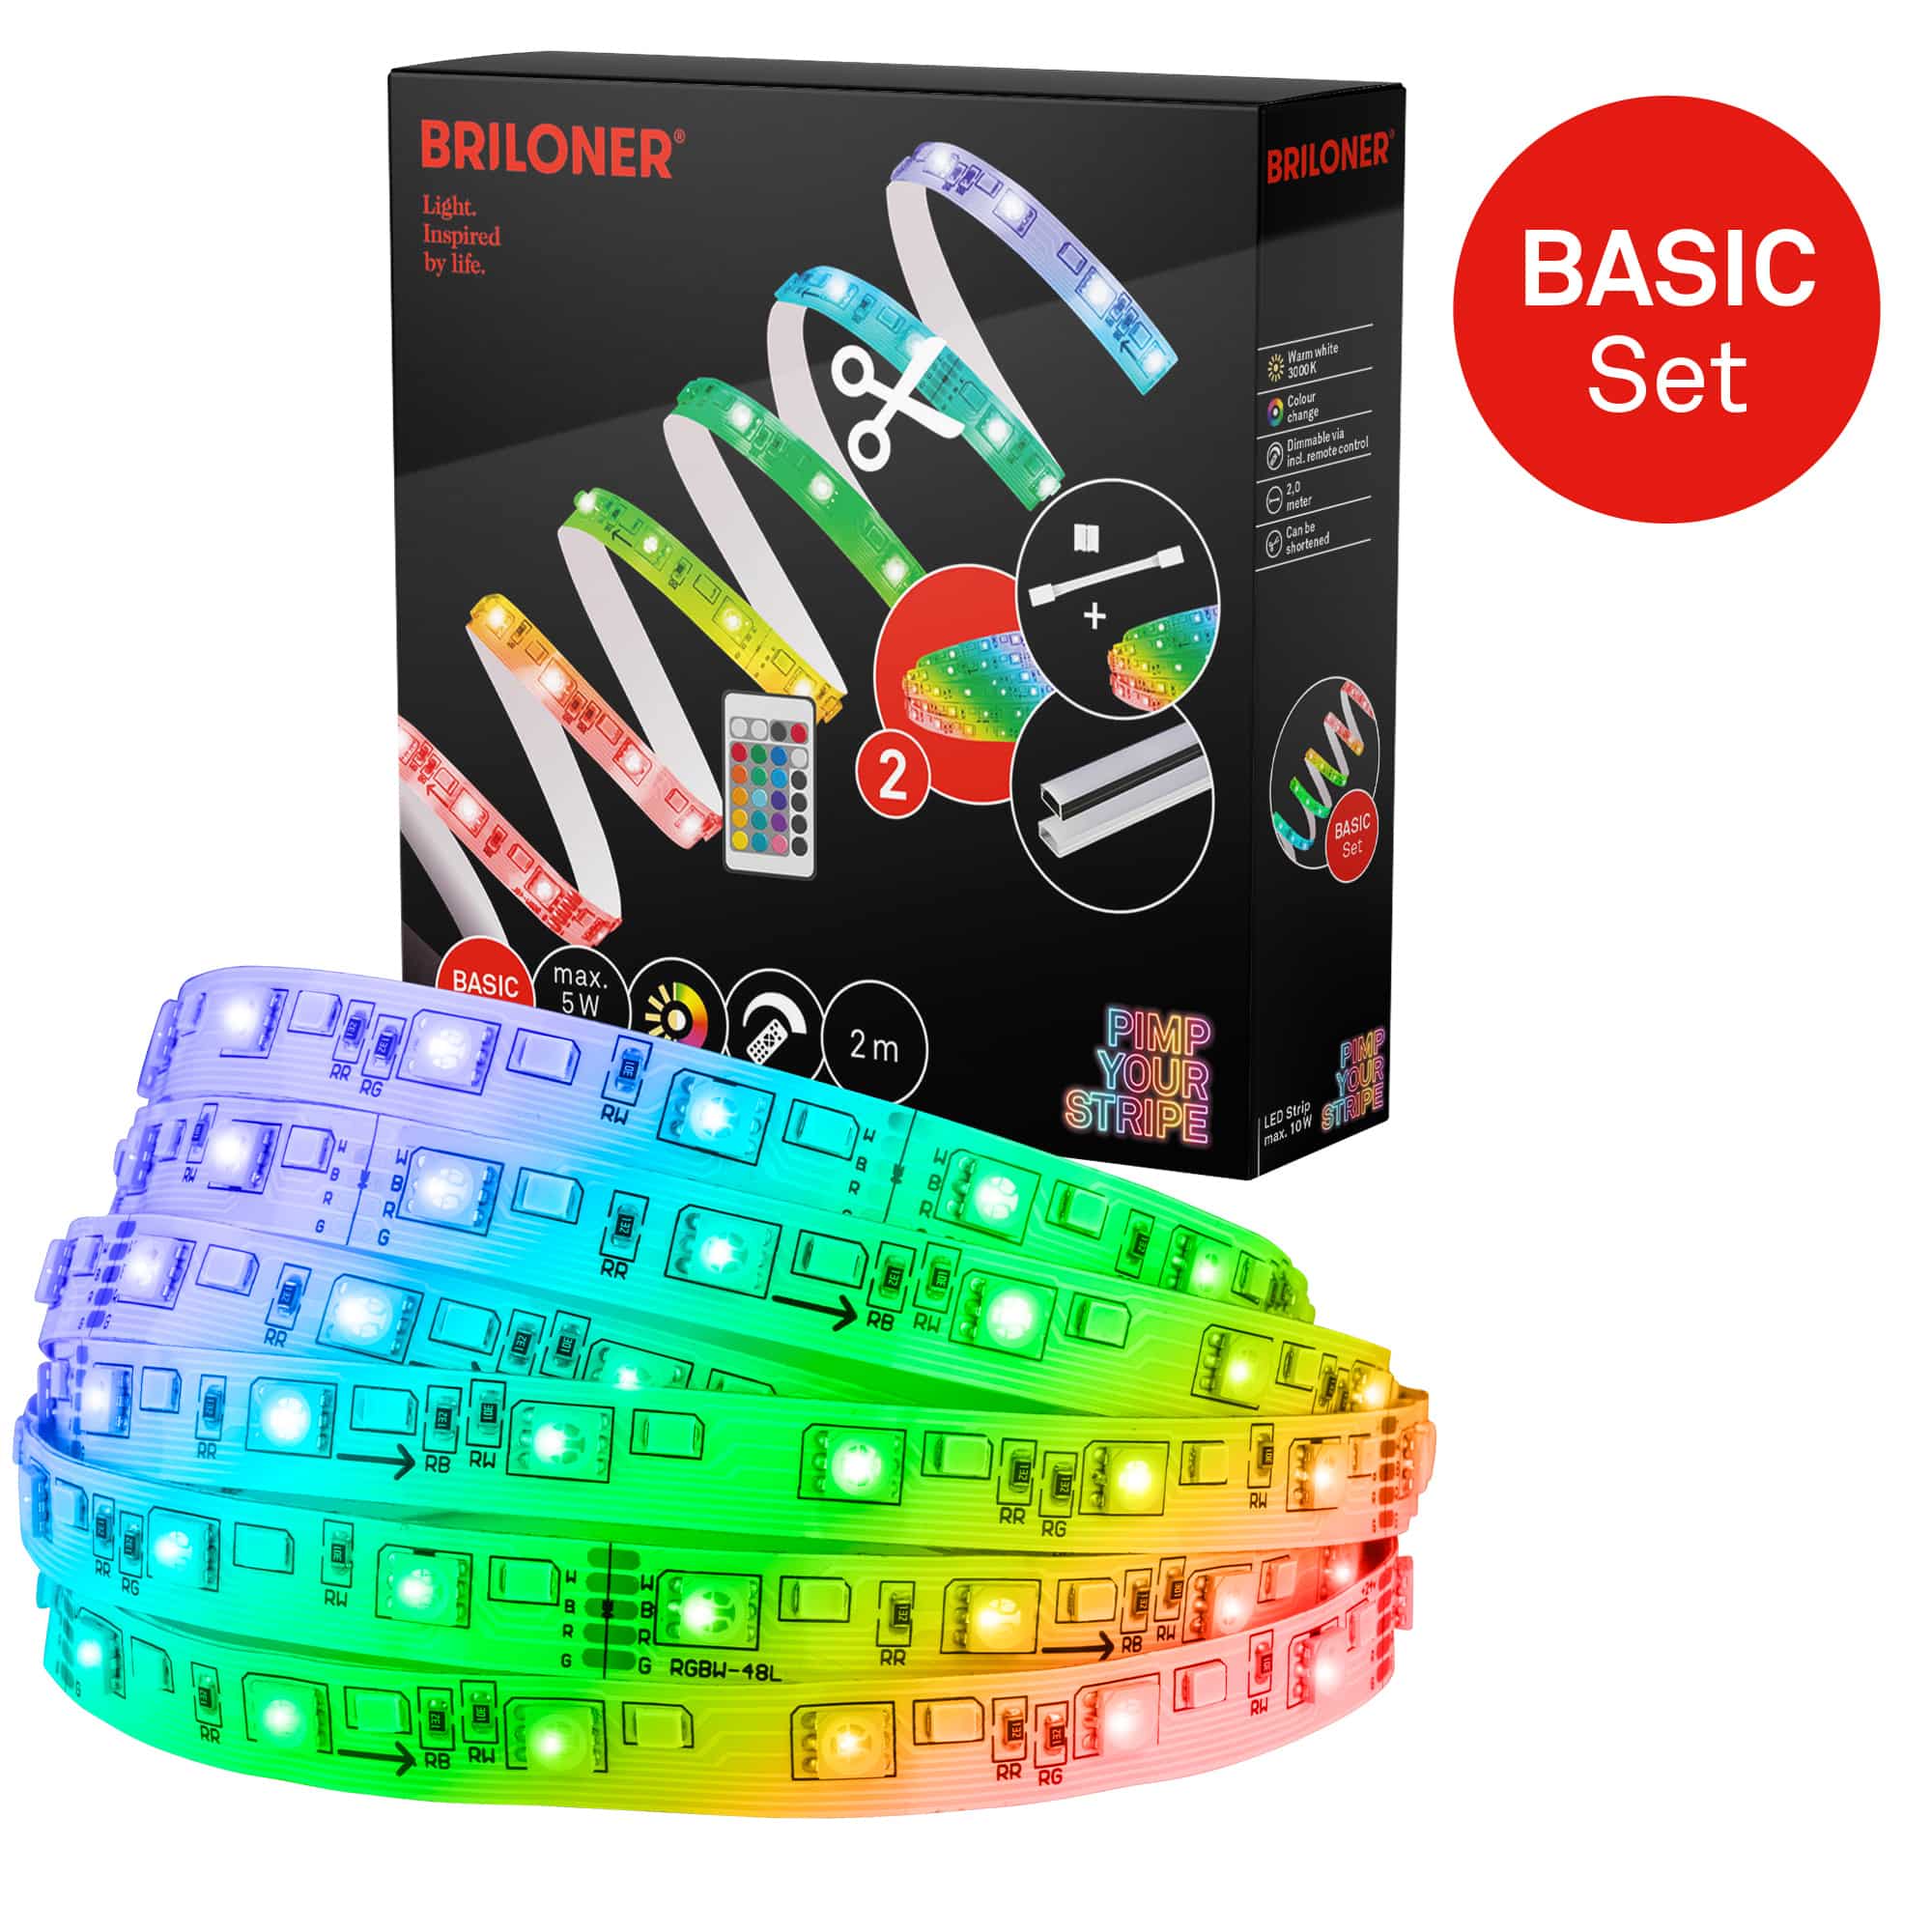 Pimp Your Stripe Starterset LED Strip 2m, RGB+W, Fernbedienung